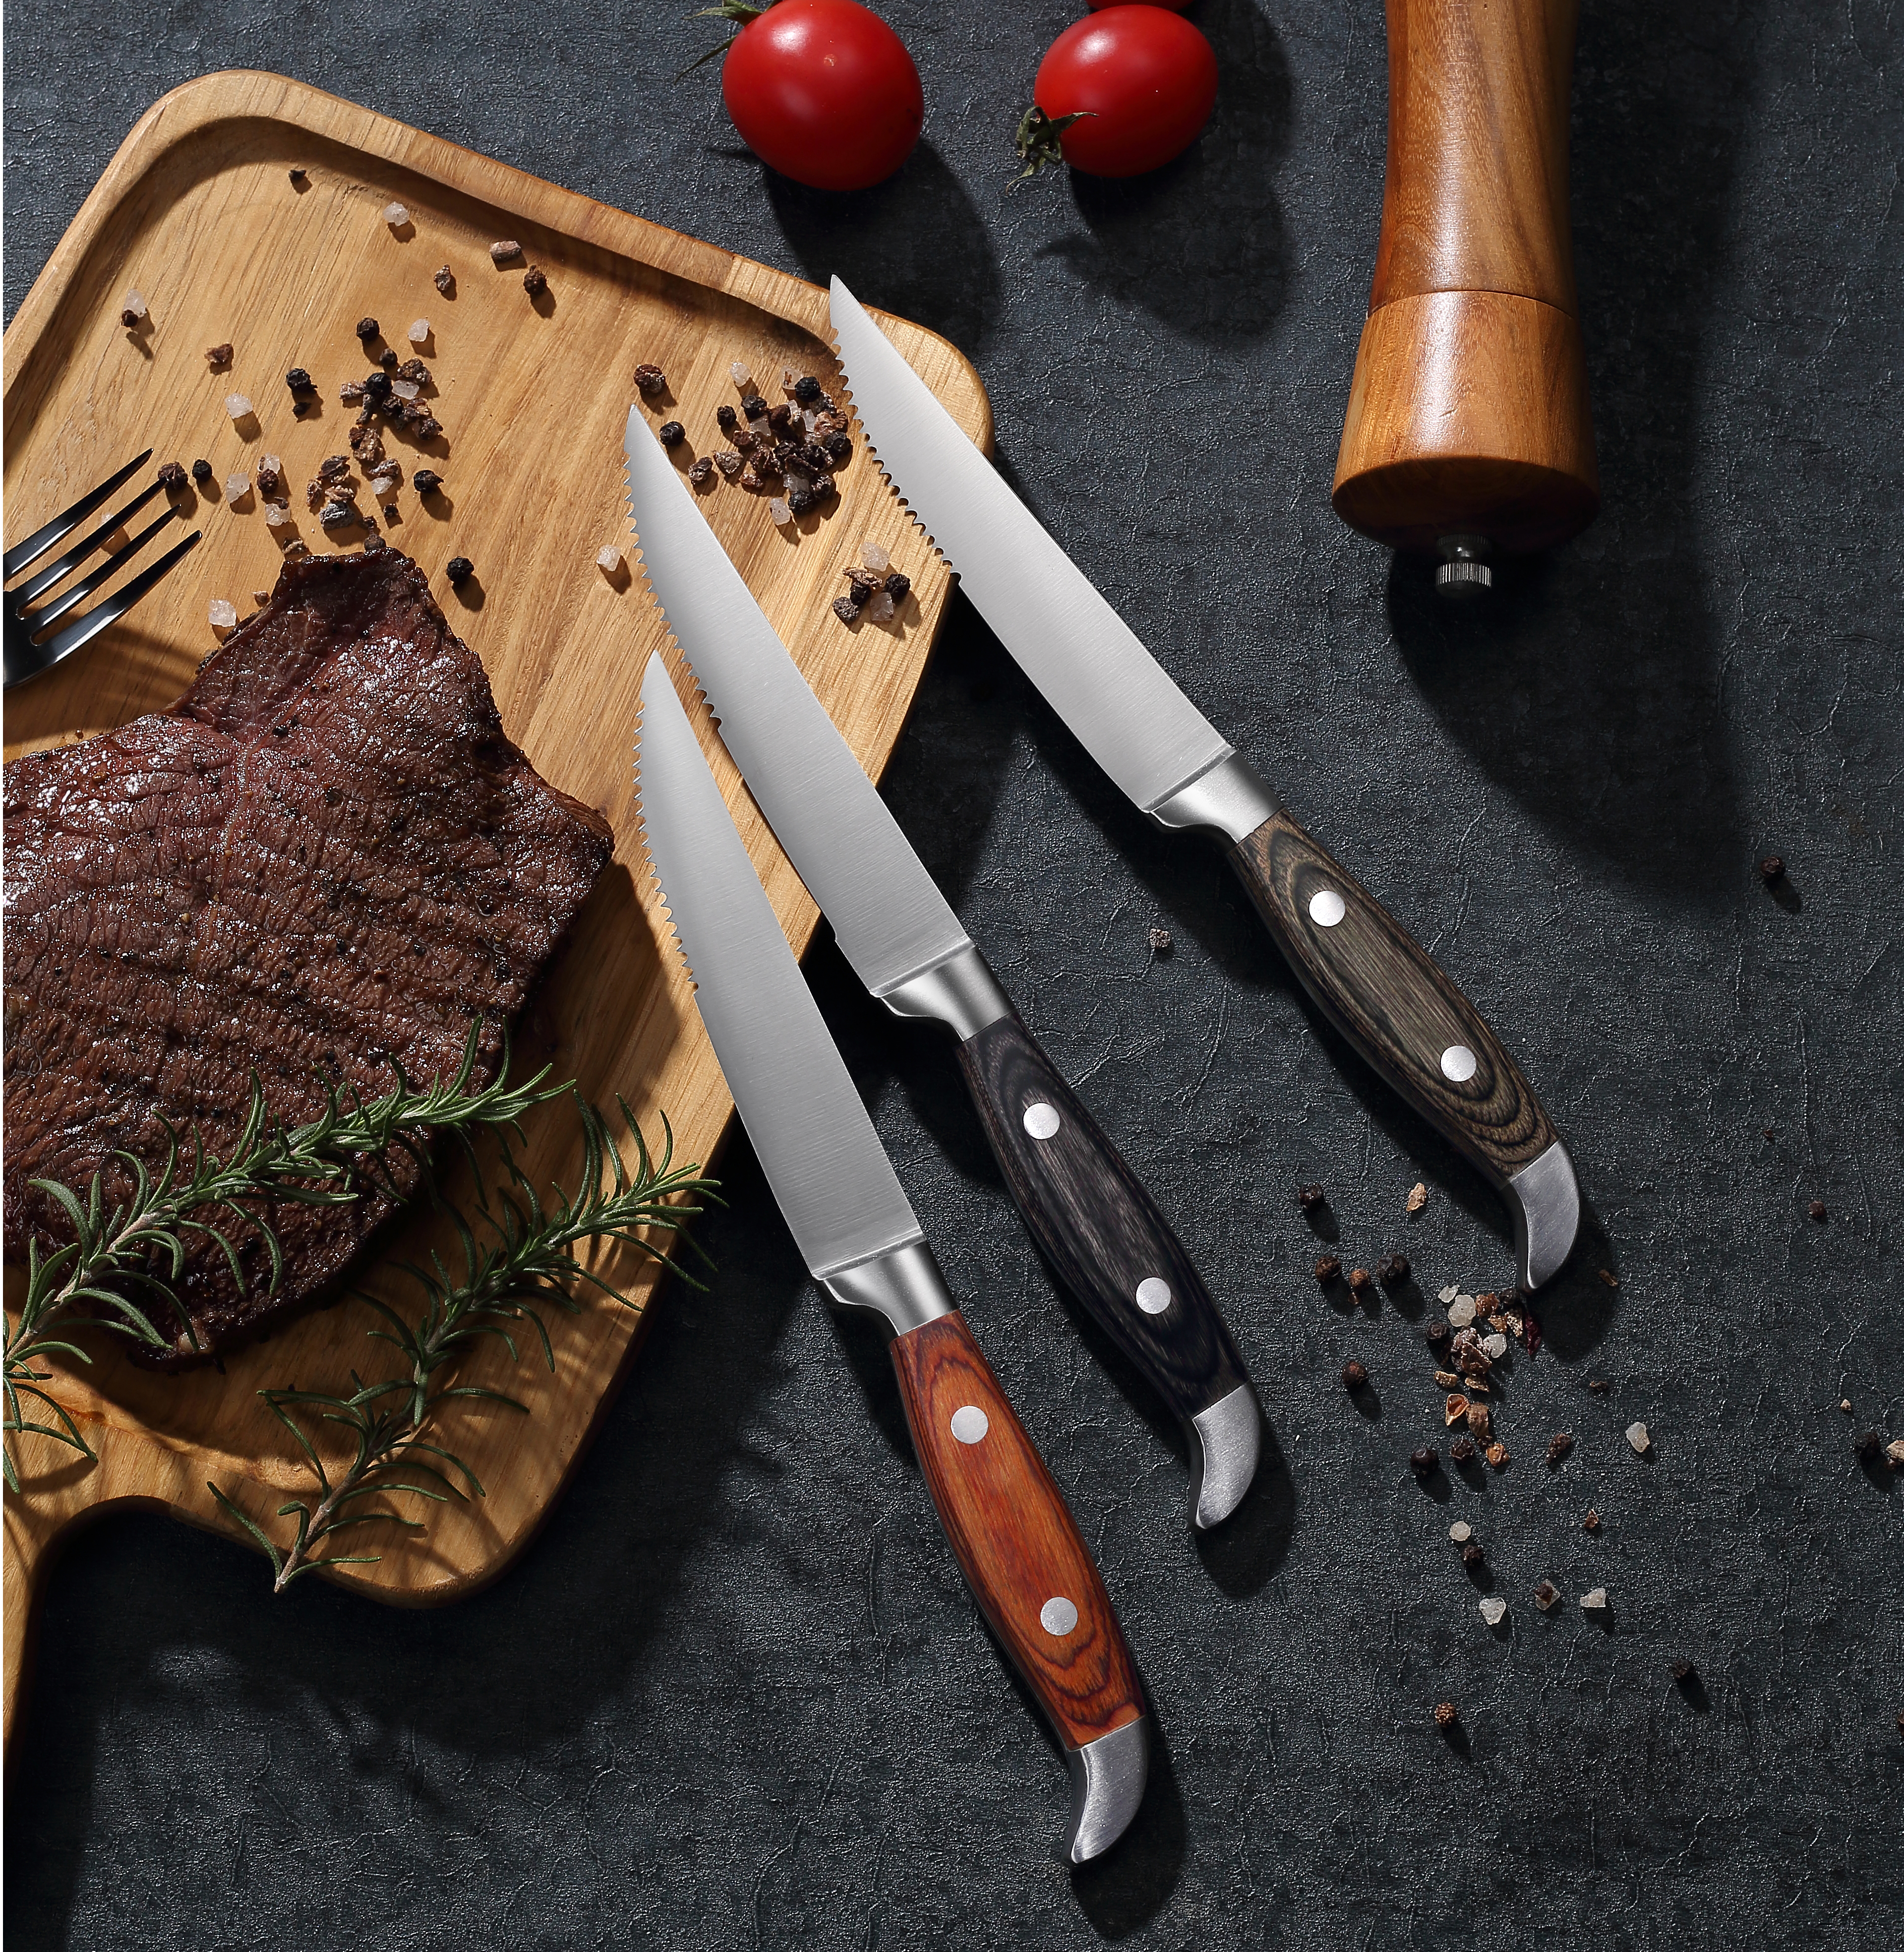 سكاكين شرائح اللحم نصف مسننة بمقبض خشبي - أدوات مائدة متينة ومريحة وأنيقة